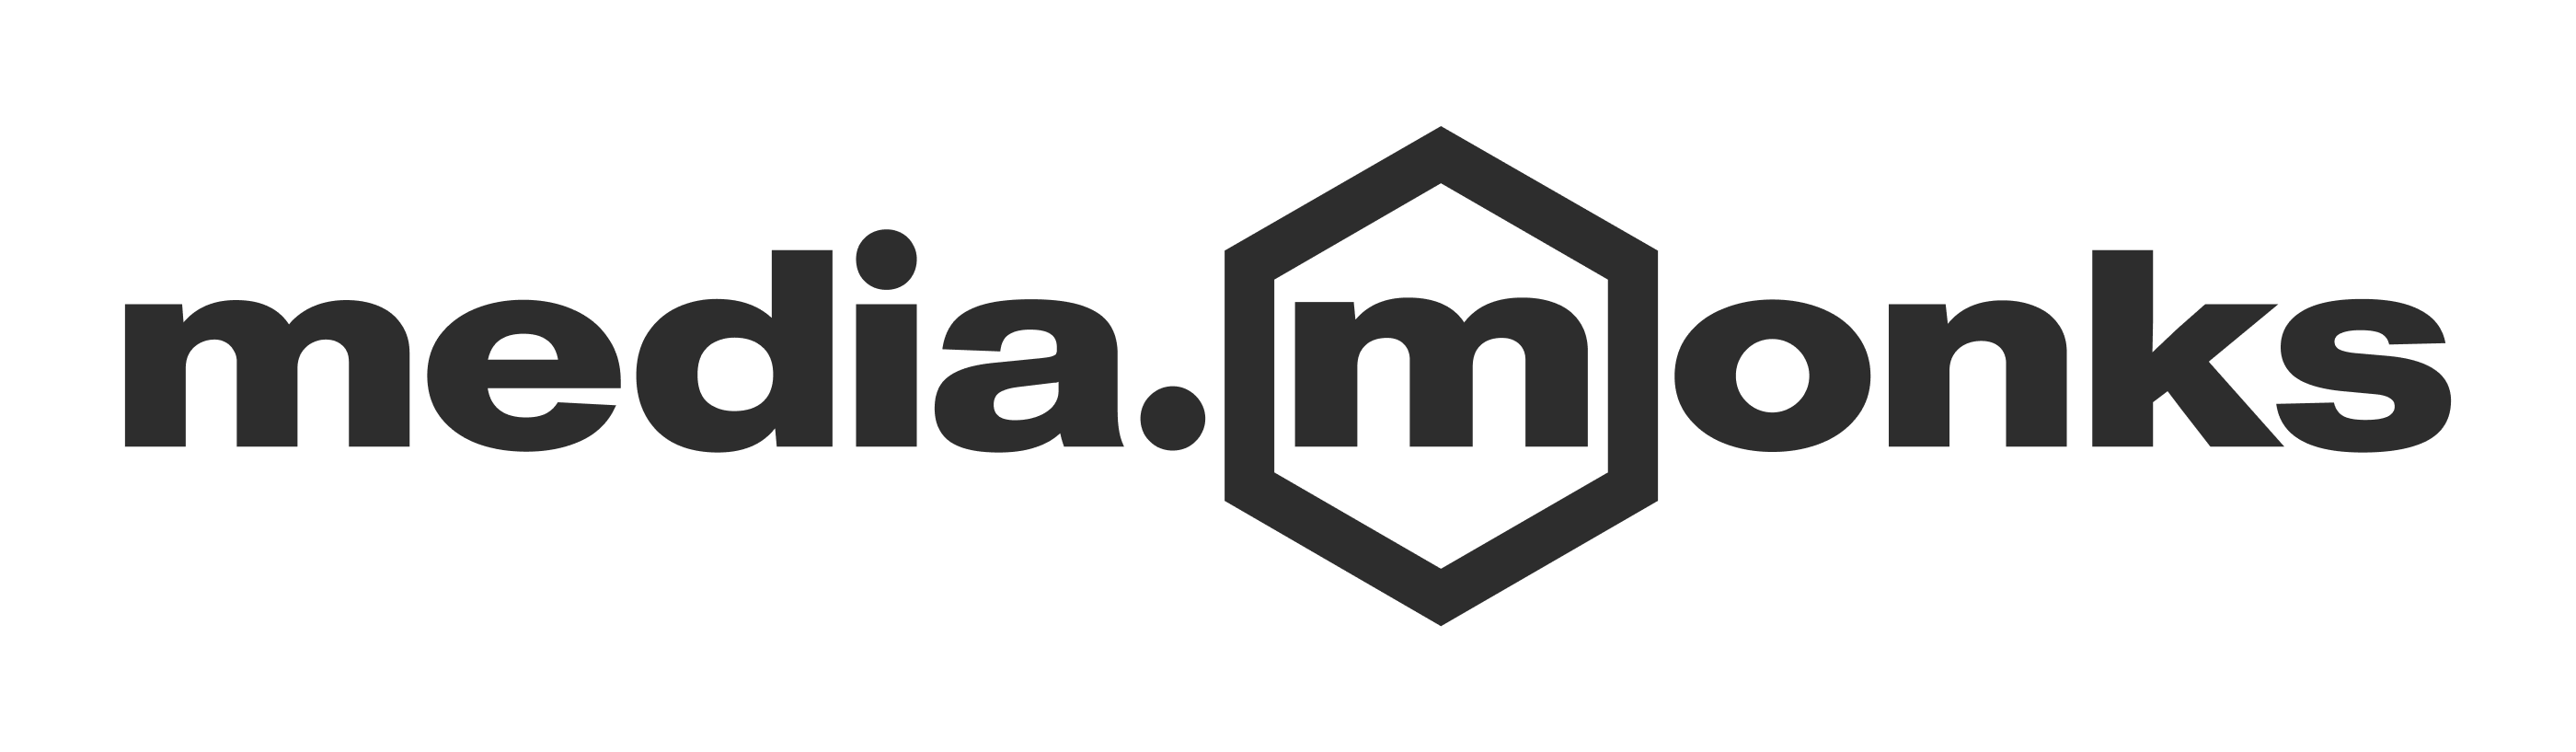 MediaMonks Logo for active job listings